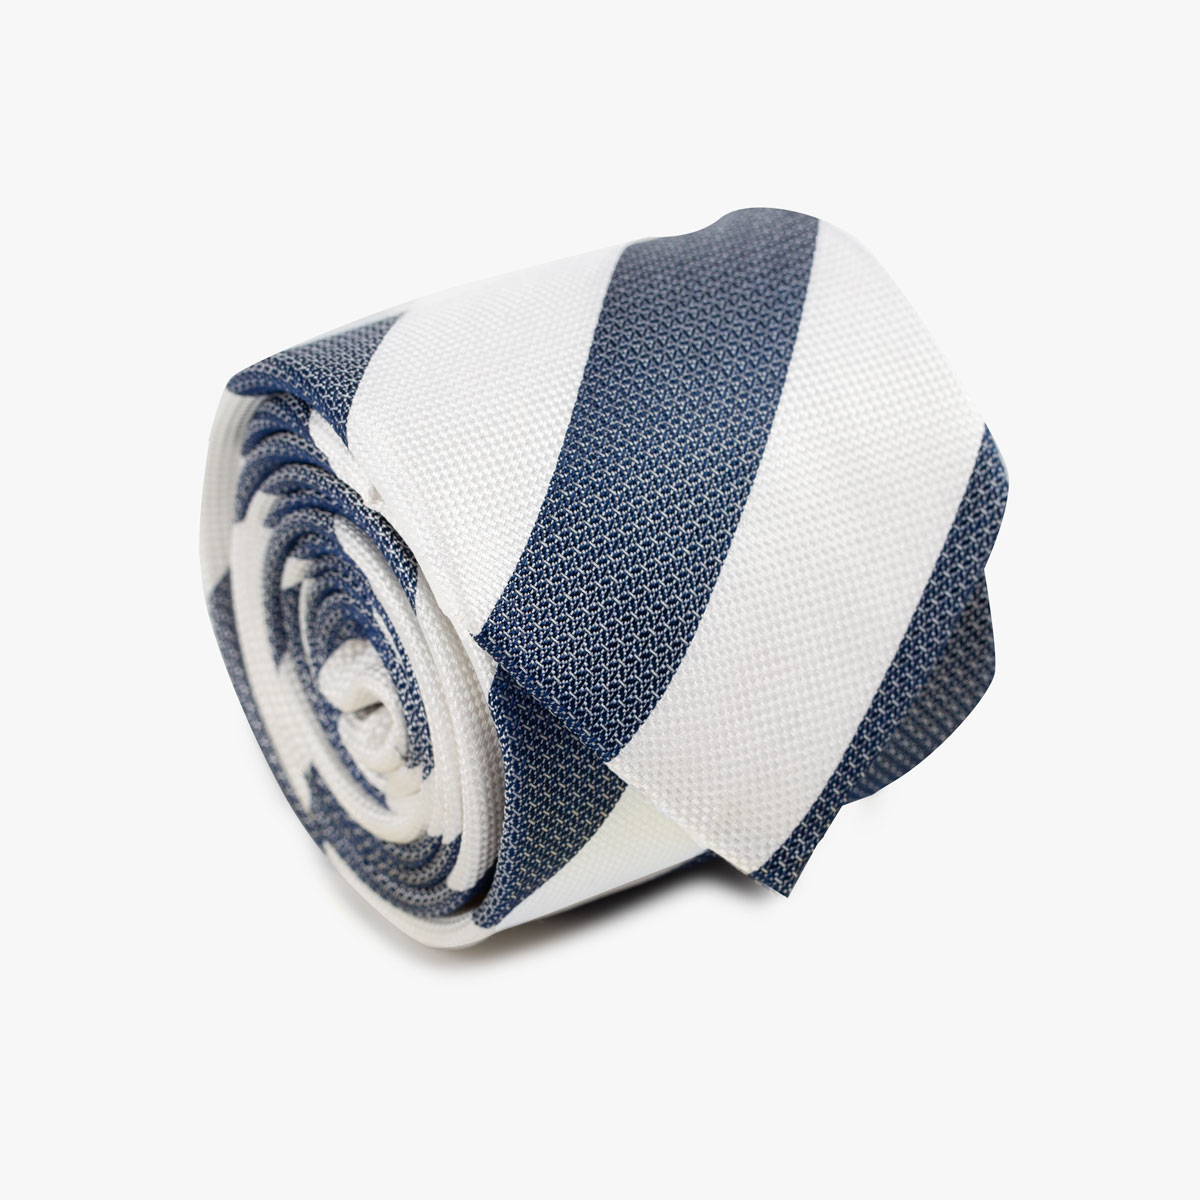 Aufgerollte Krawatte mit breiten Streifen in dunkelblau und weiß